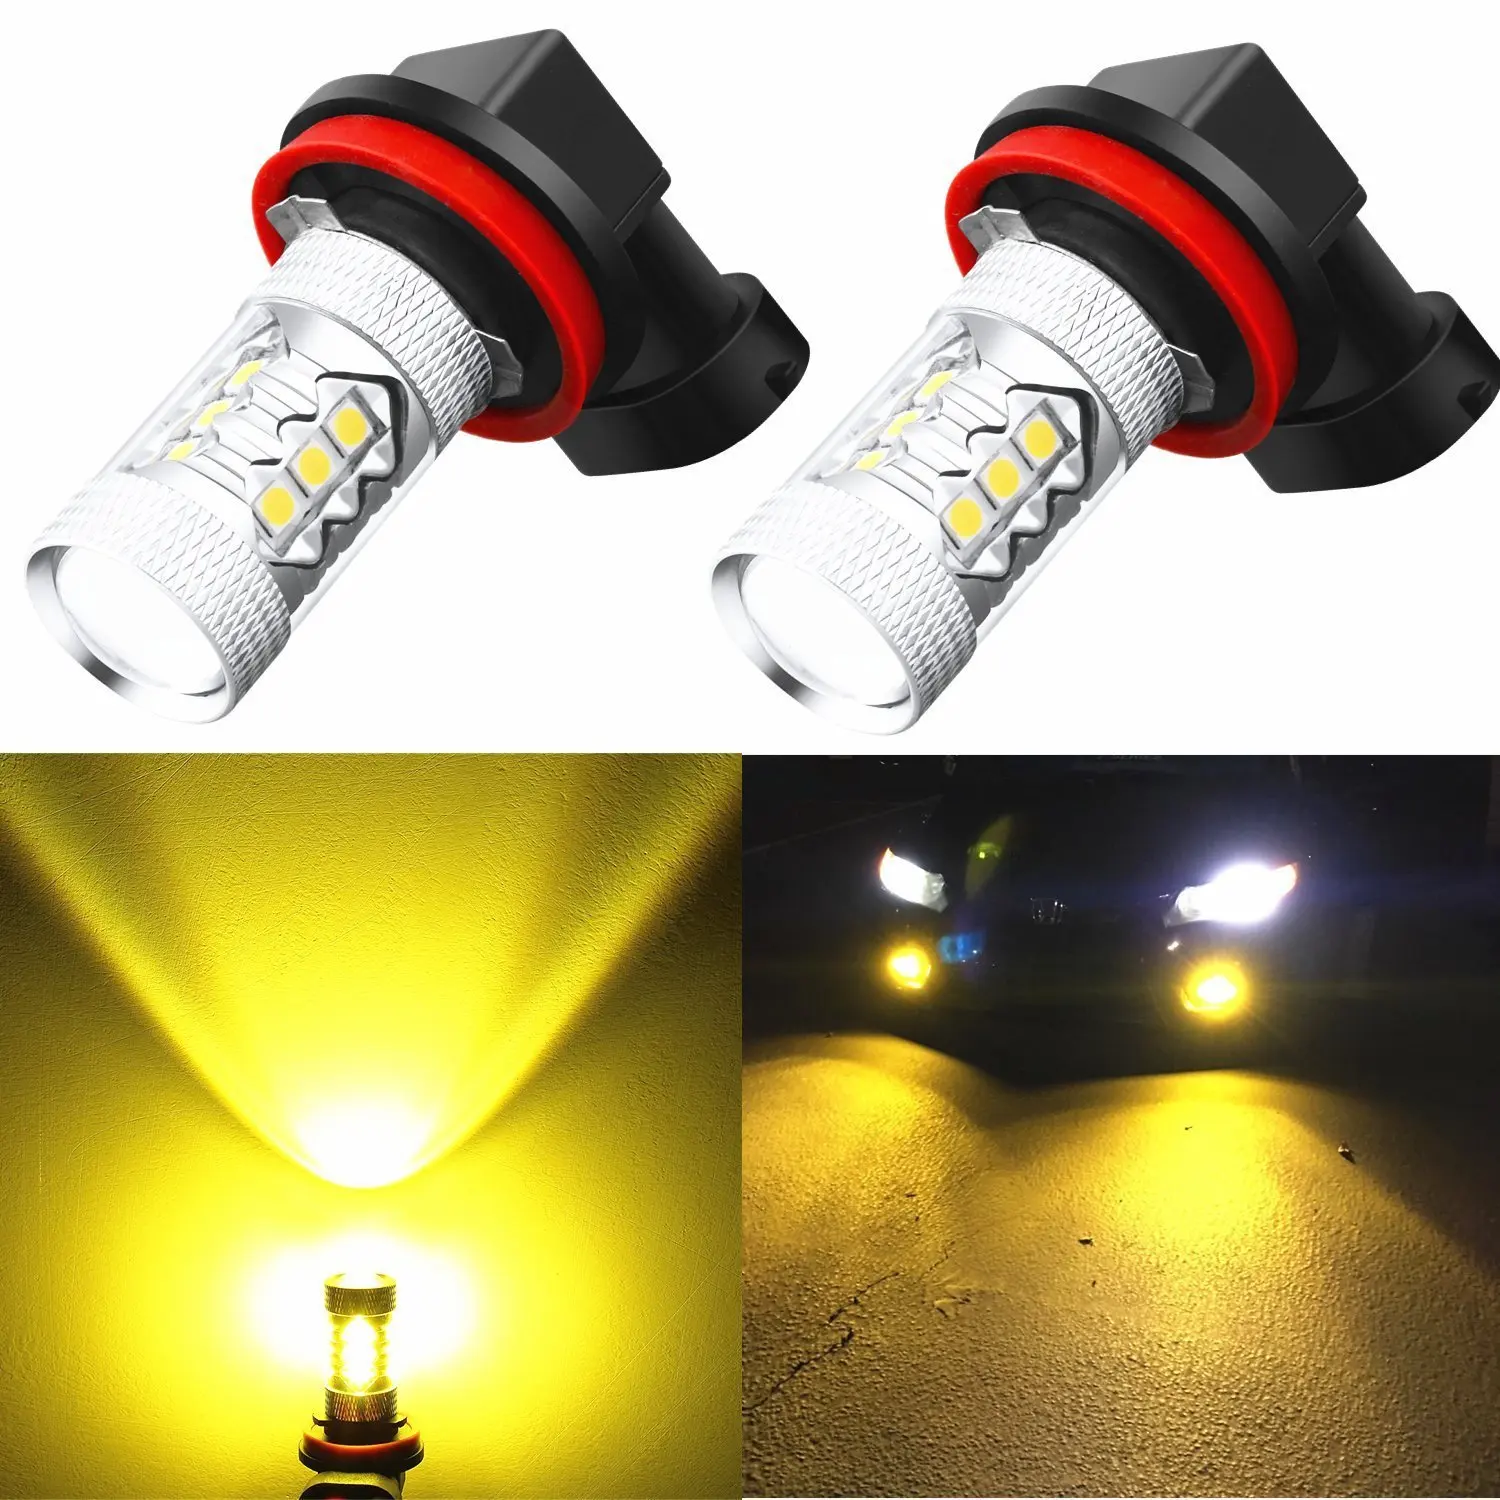 H11 12v светодиодная. Yellow 3000k h11. Лед лампы h16. Лампа h11 12v led. H16 светодиодные лампы.